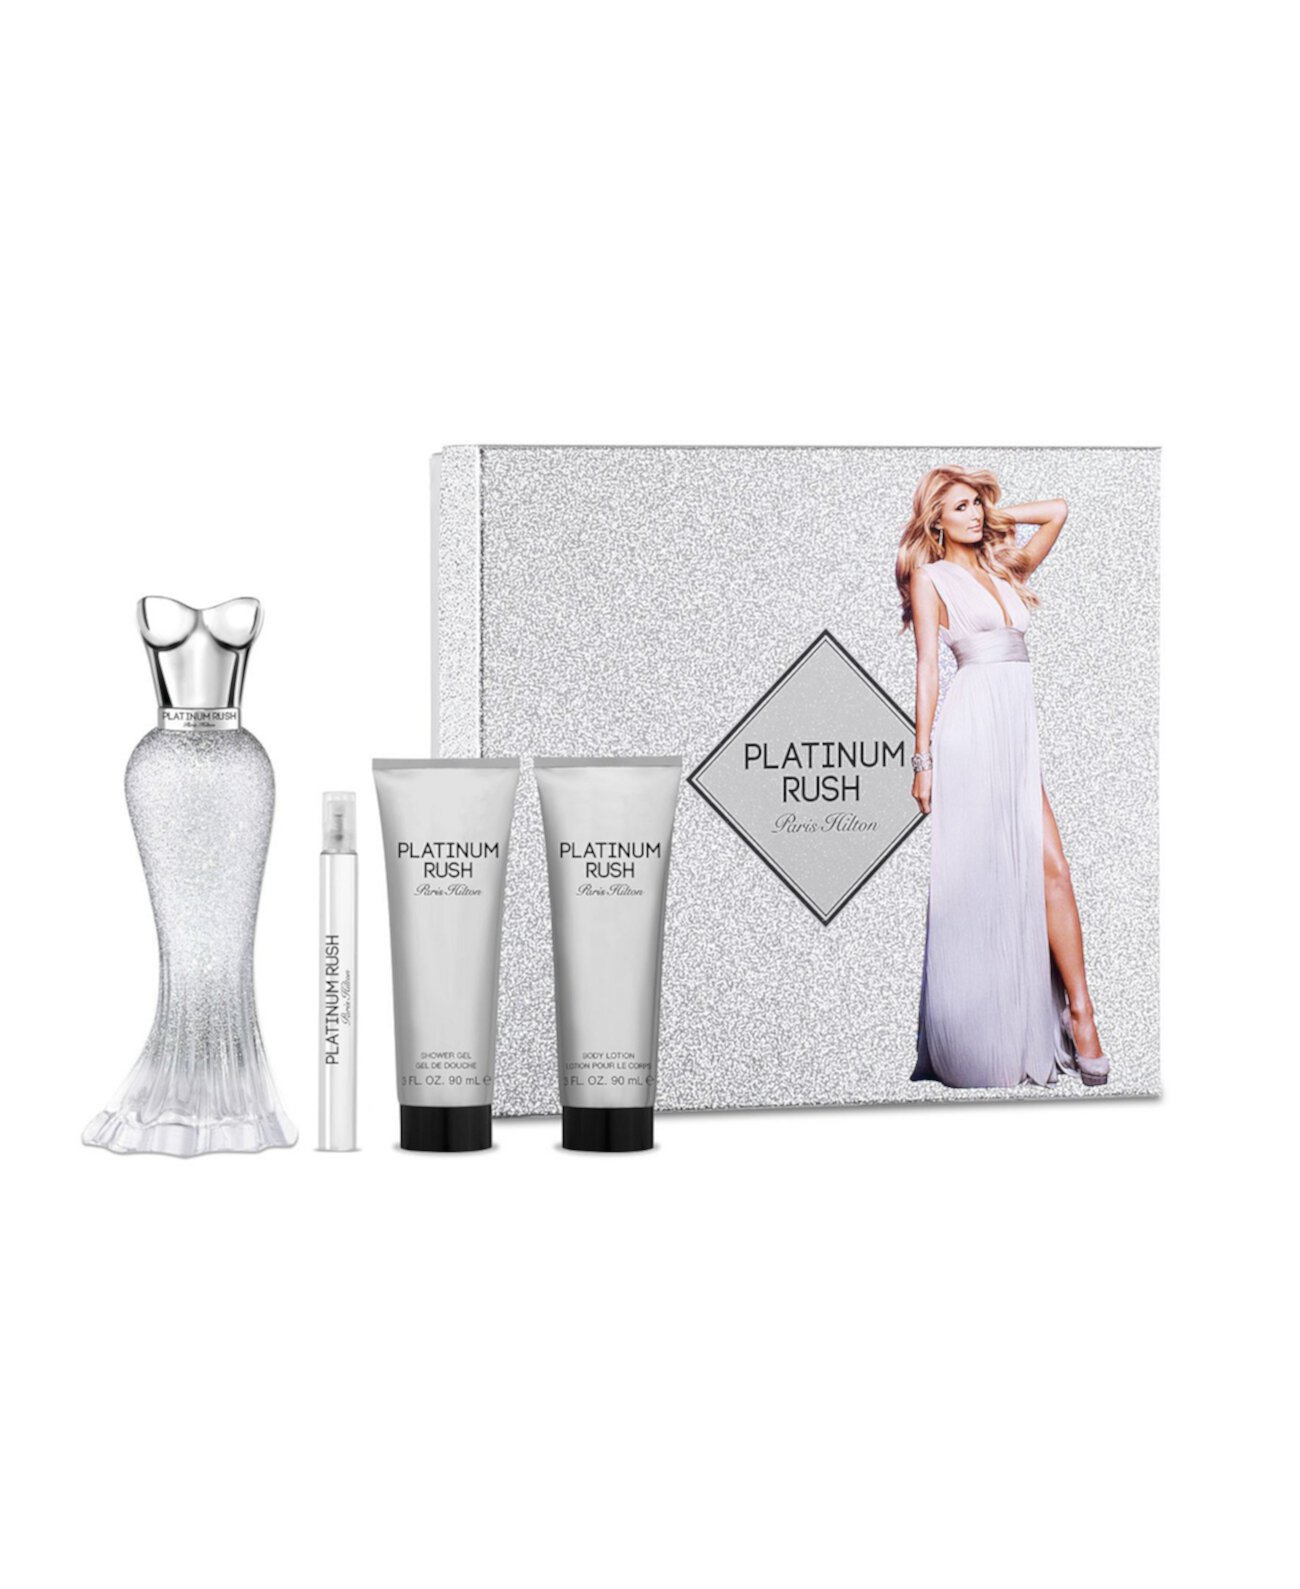 Женский подарочный набор Platinum Rush, 9,74 эт. Унция Paris Hilton